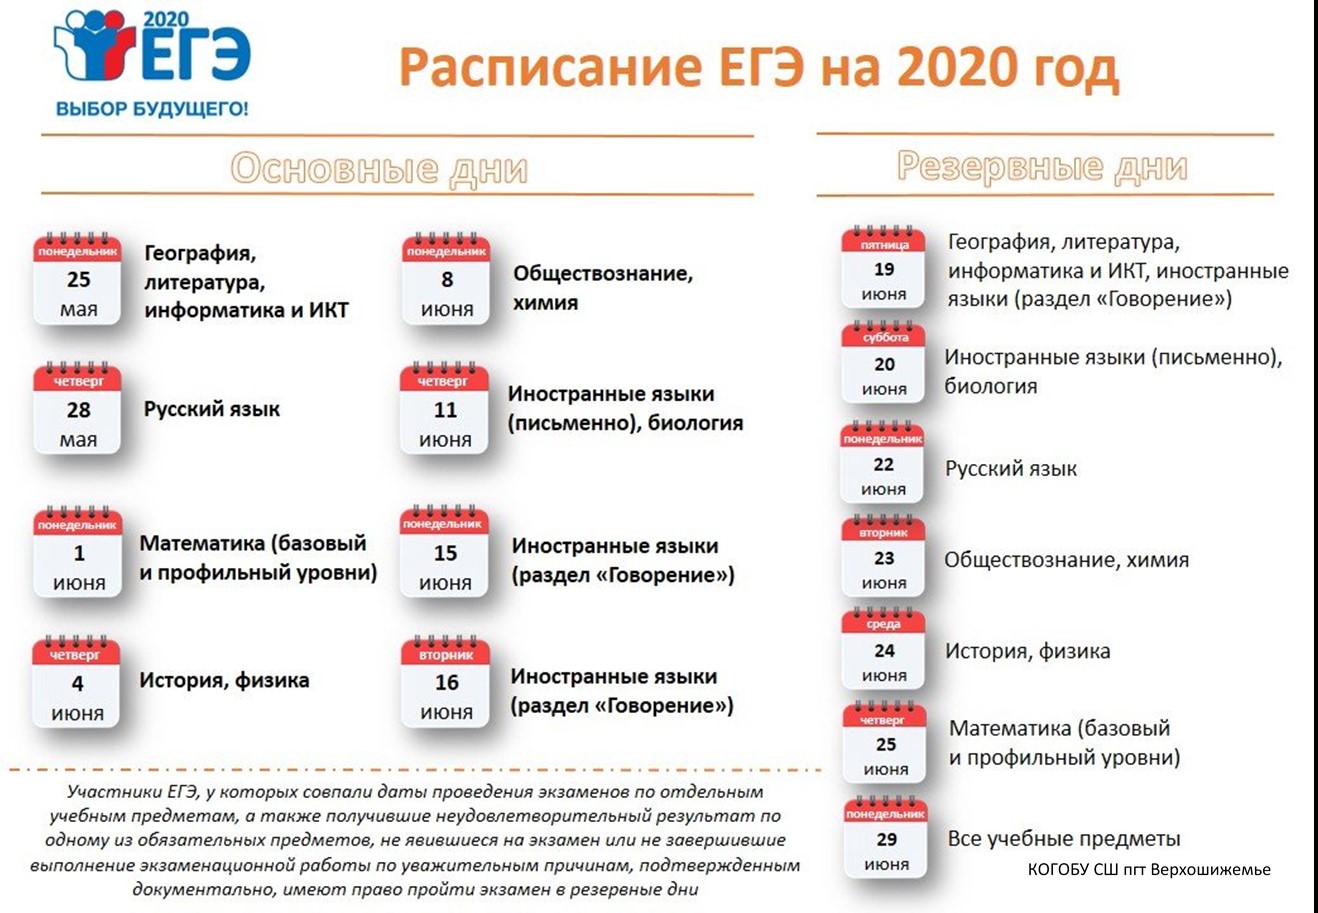 Егэ 2023 сайты решать. ЕГЭ 2020 даты проведения. Сроки проведения единого государственного экзамена в 2020 году. ЕГЭ 2020 расписание экзаменов. Резервные даты ЕГЭ 2020.